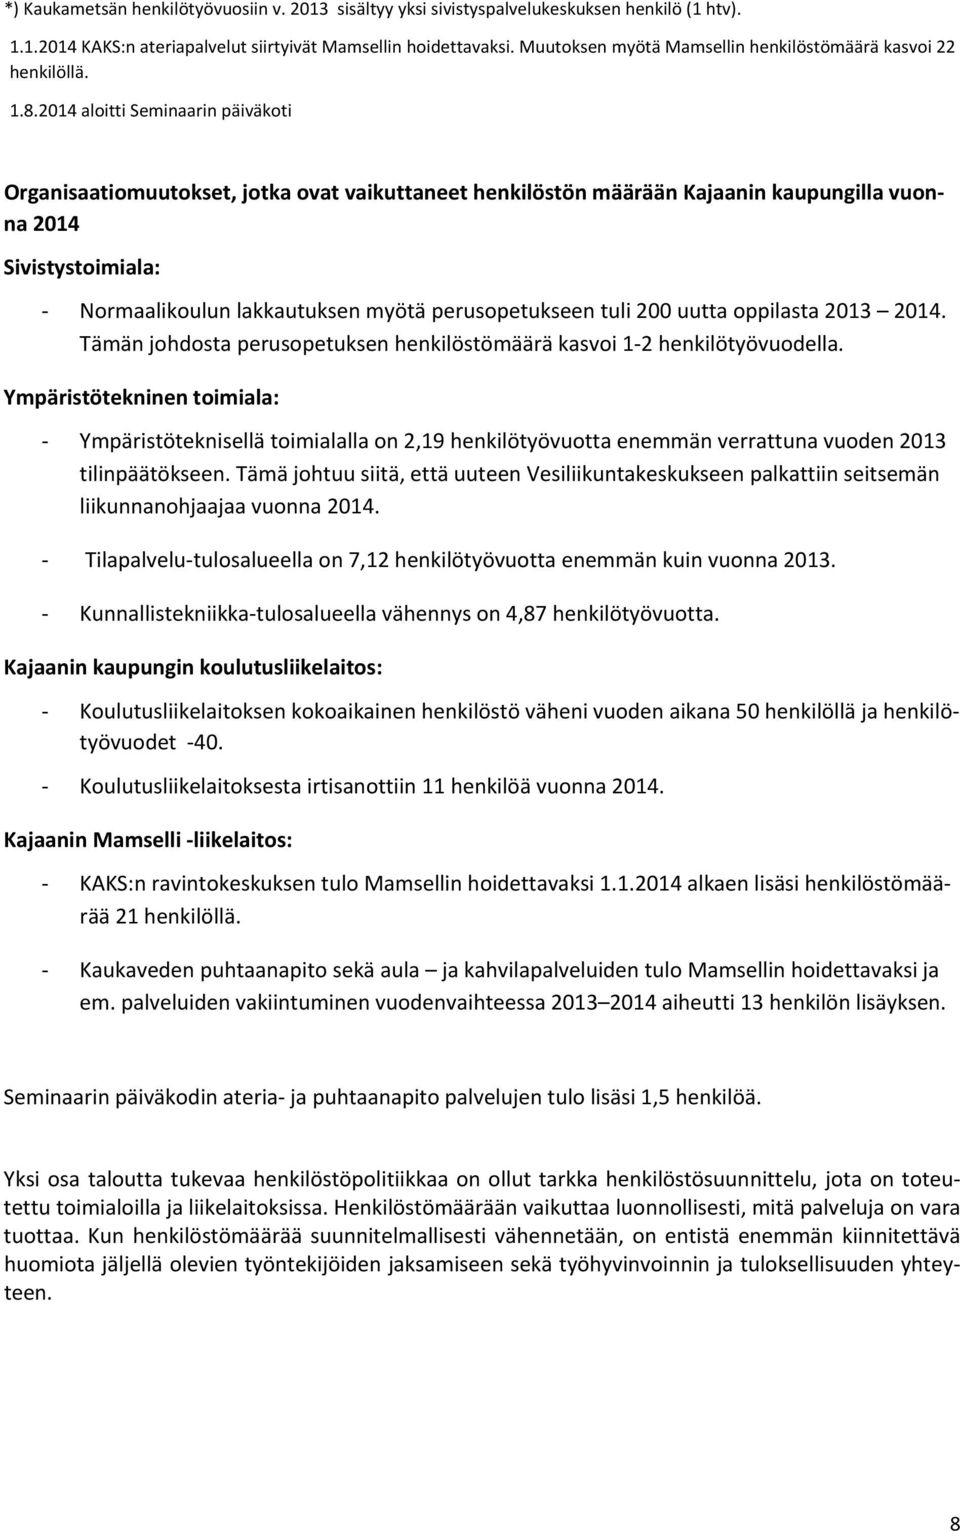 2014 aloitti Seminaarin päiväkoti Organisaatiomuutokset, jotka ovat vaikuttaneet henkilöstön määrään Kajaanin kaupungilla vuonna 2014 Sivistystoimiala: Normaalikoulun lakkautuksen myötä